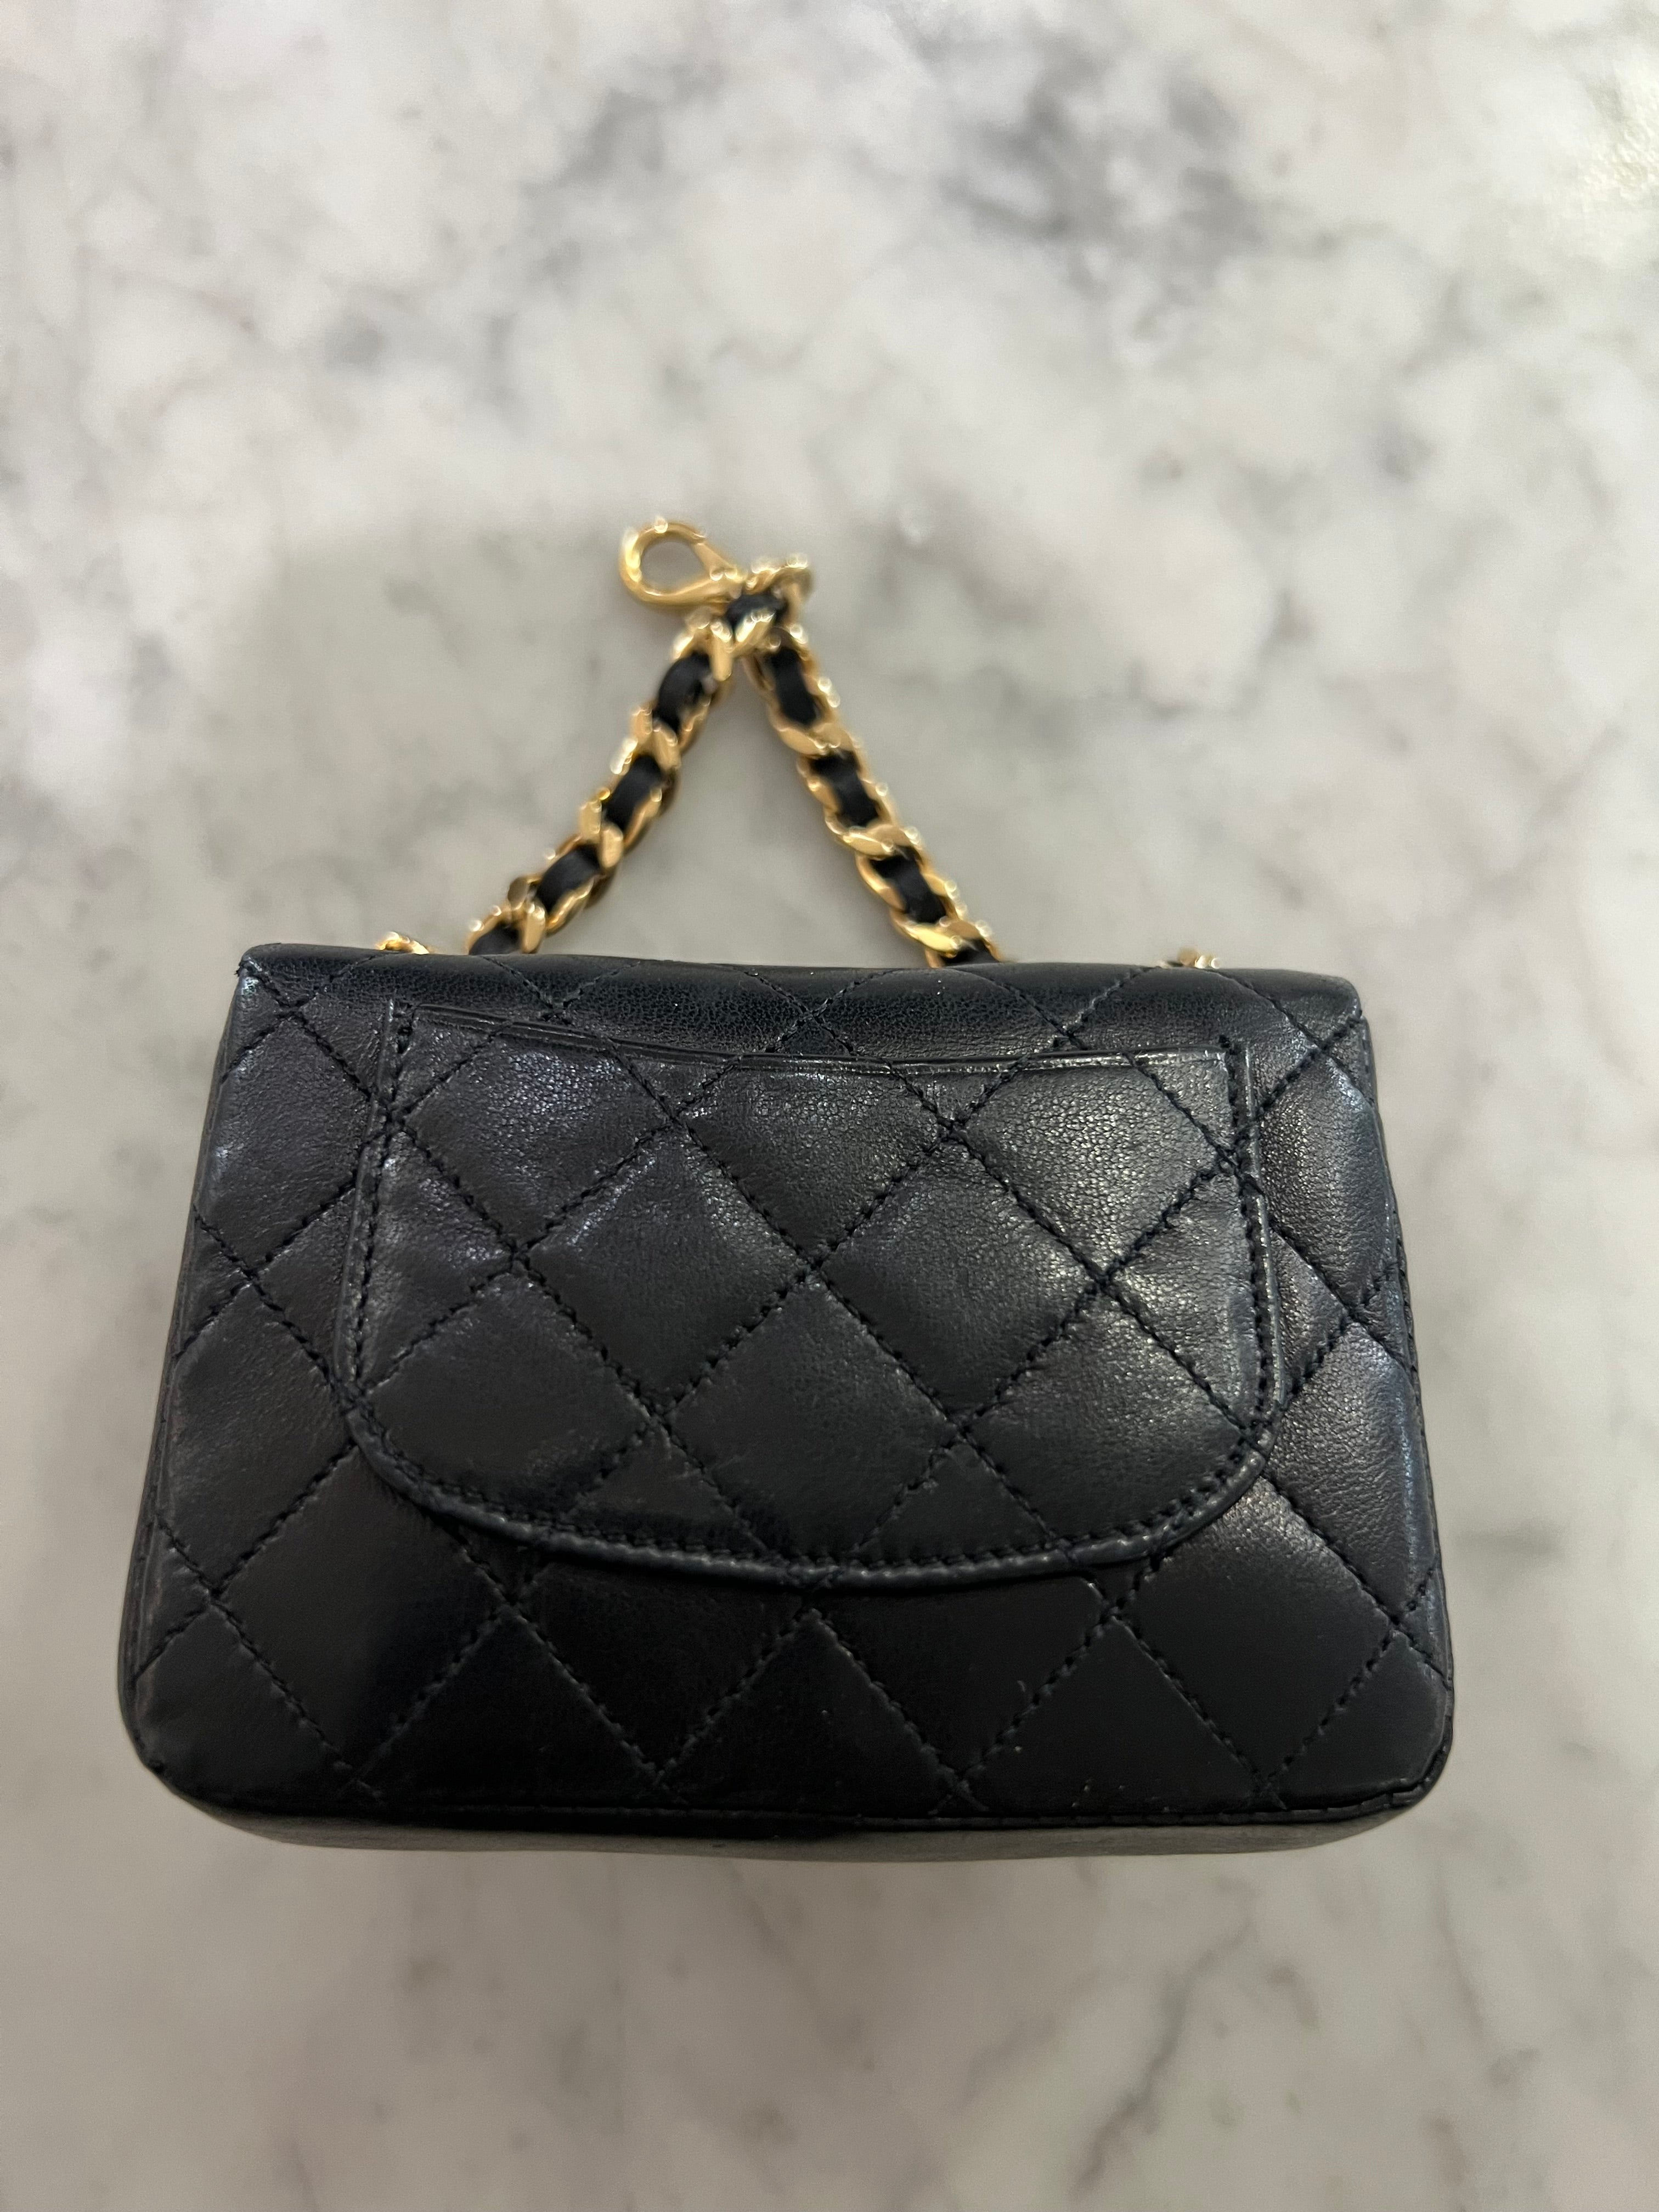 Chanel Mini Belt Bag Charm